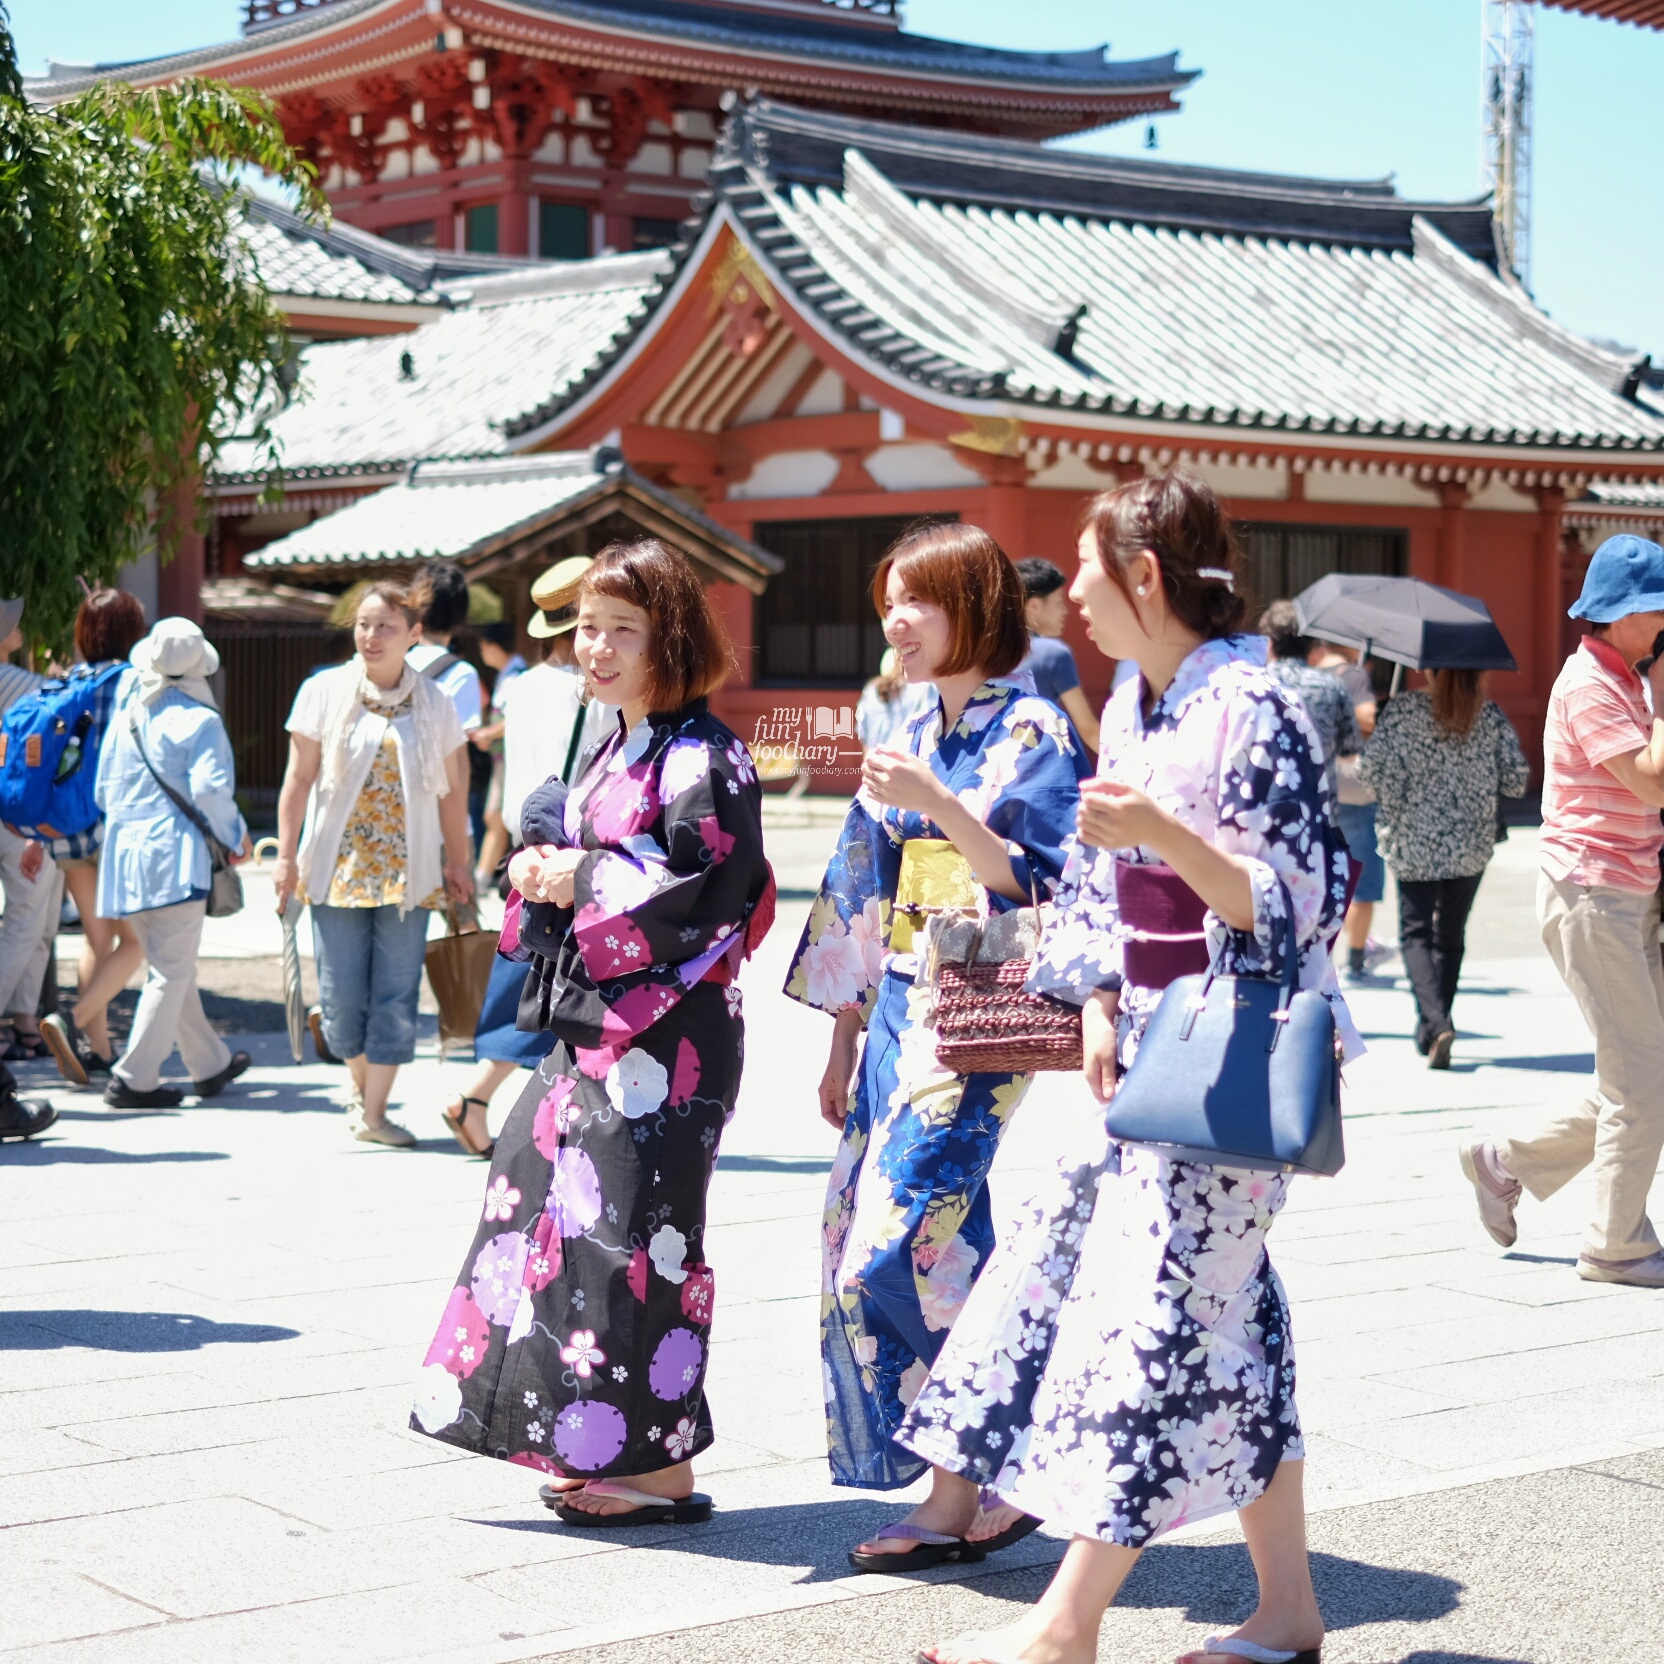 Japanese Girls Spotted at Asakusa Tokyo by Myfunfoodiary